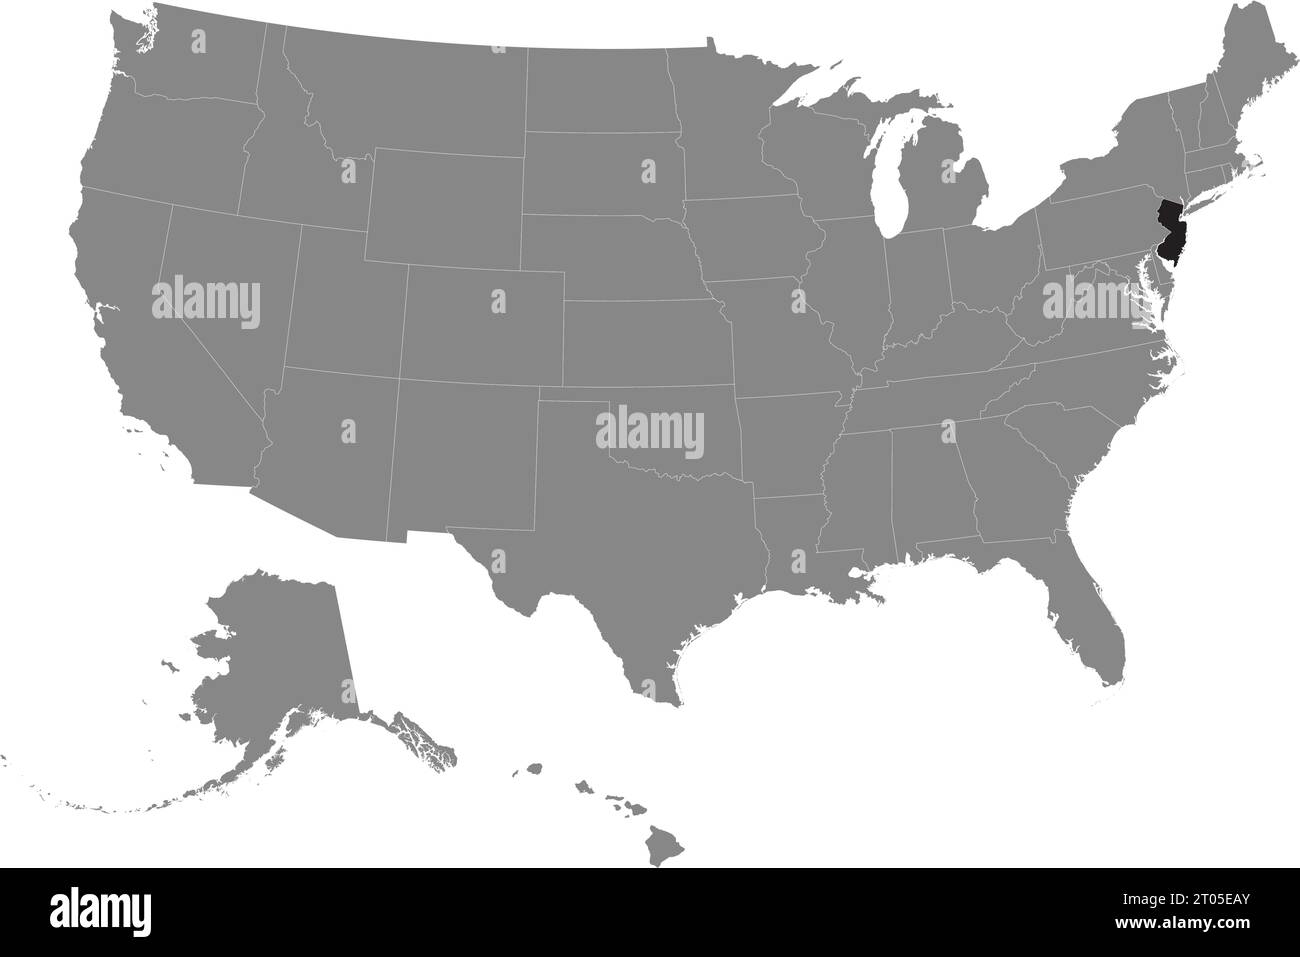 Schwarze CMYK-Bundeskarte von NEW JERSEY in detaillierter grauer, leerer politischer Karte der Vereinigten Staaten von Amerika auf transparentem Hintergrund Stock Vektor